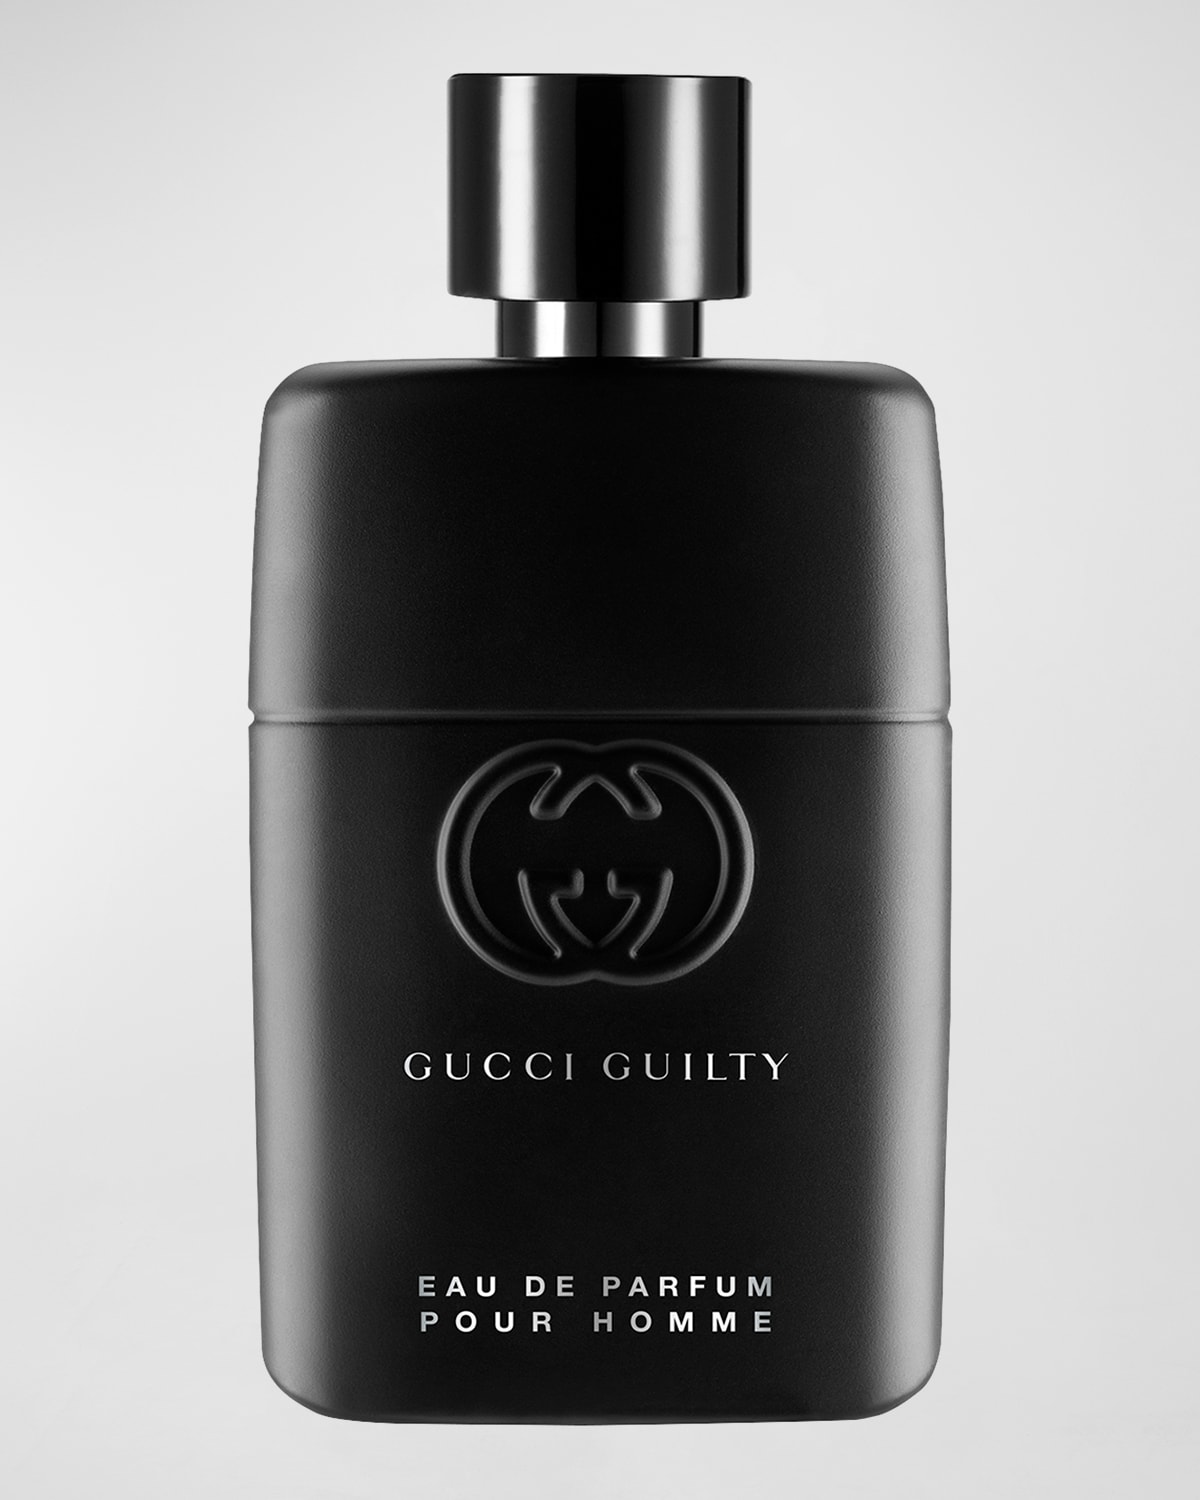 Guilty Pour Homme Eau de Parfum, 1.7 oz.